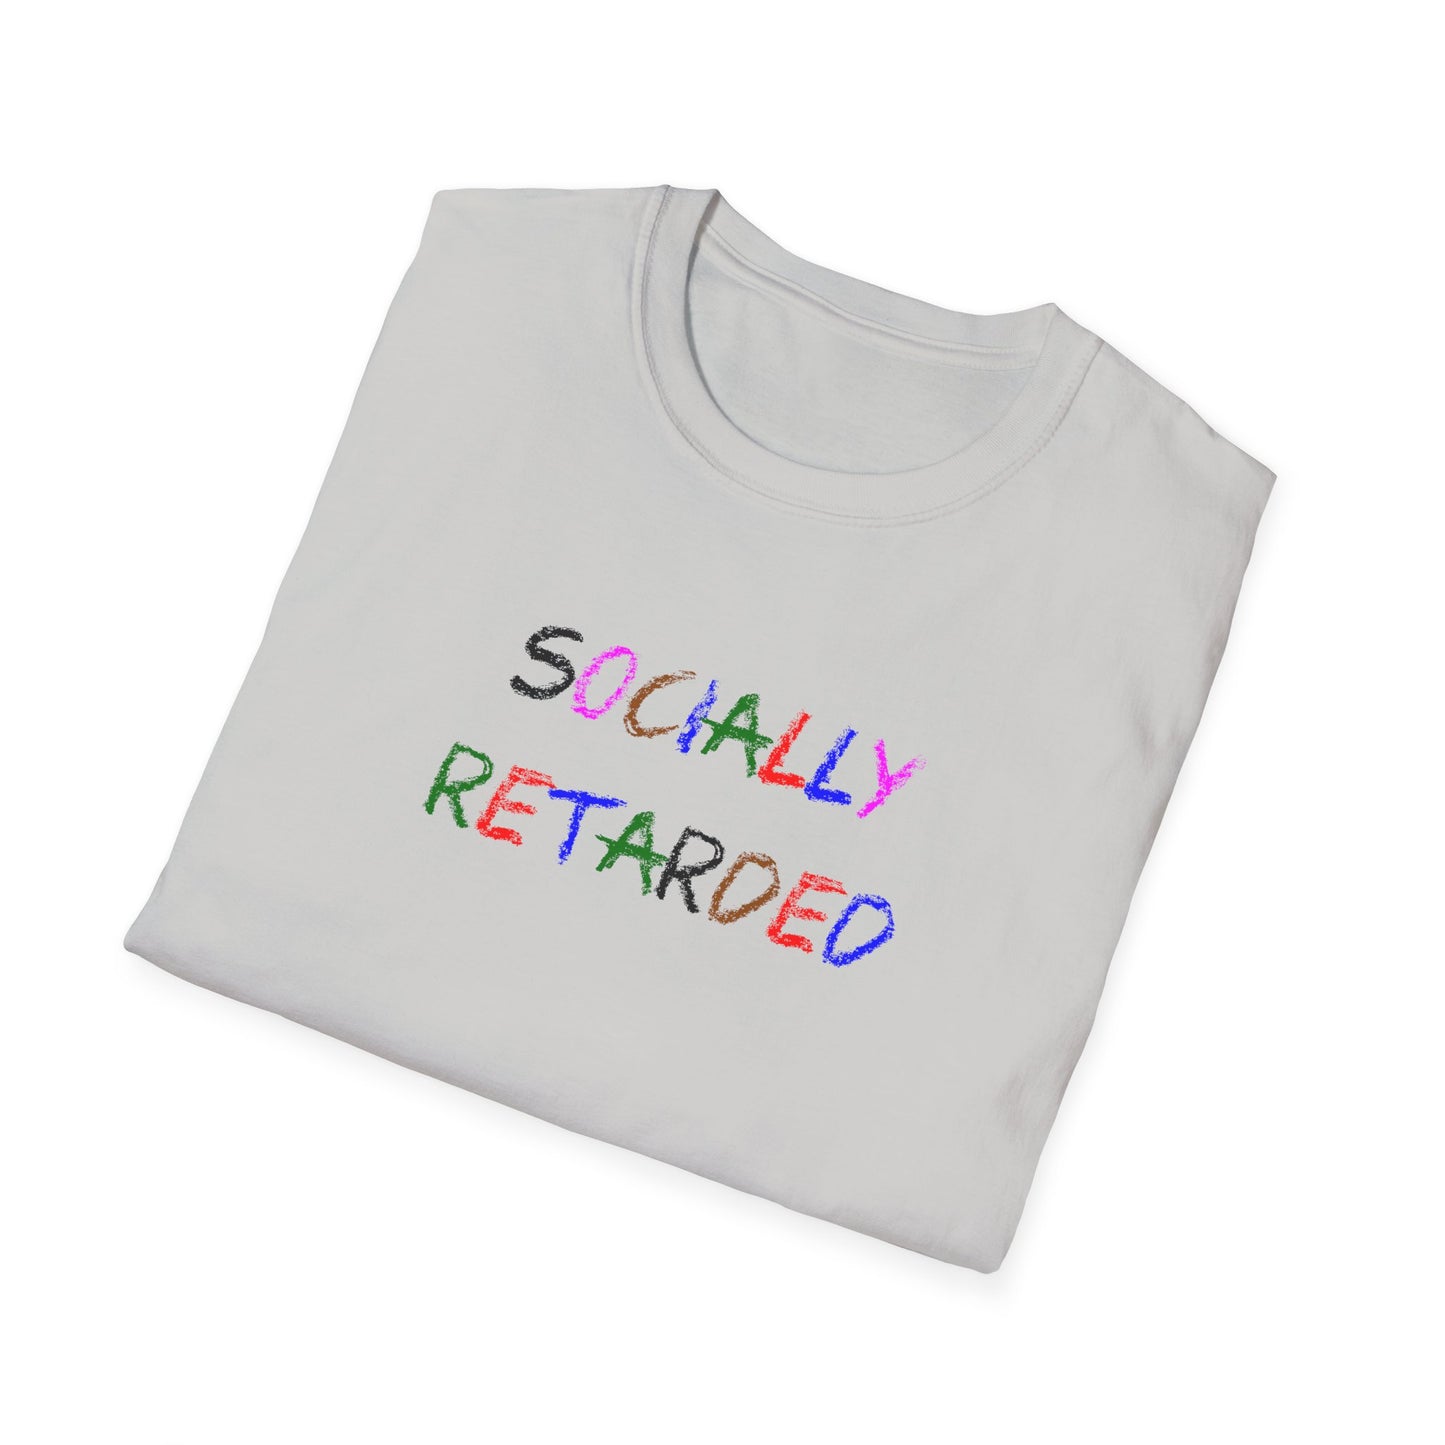 Socially Retarded - T-Shirt